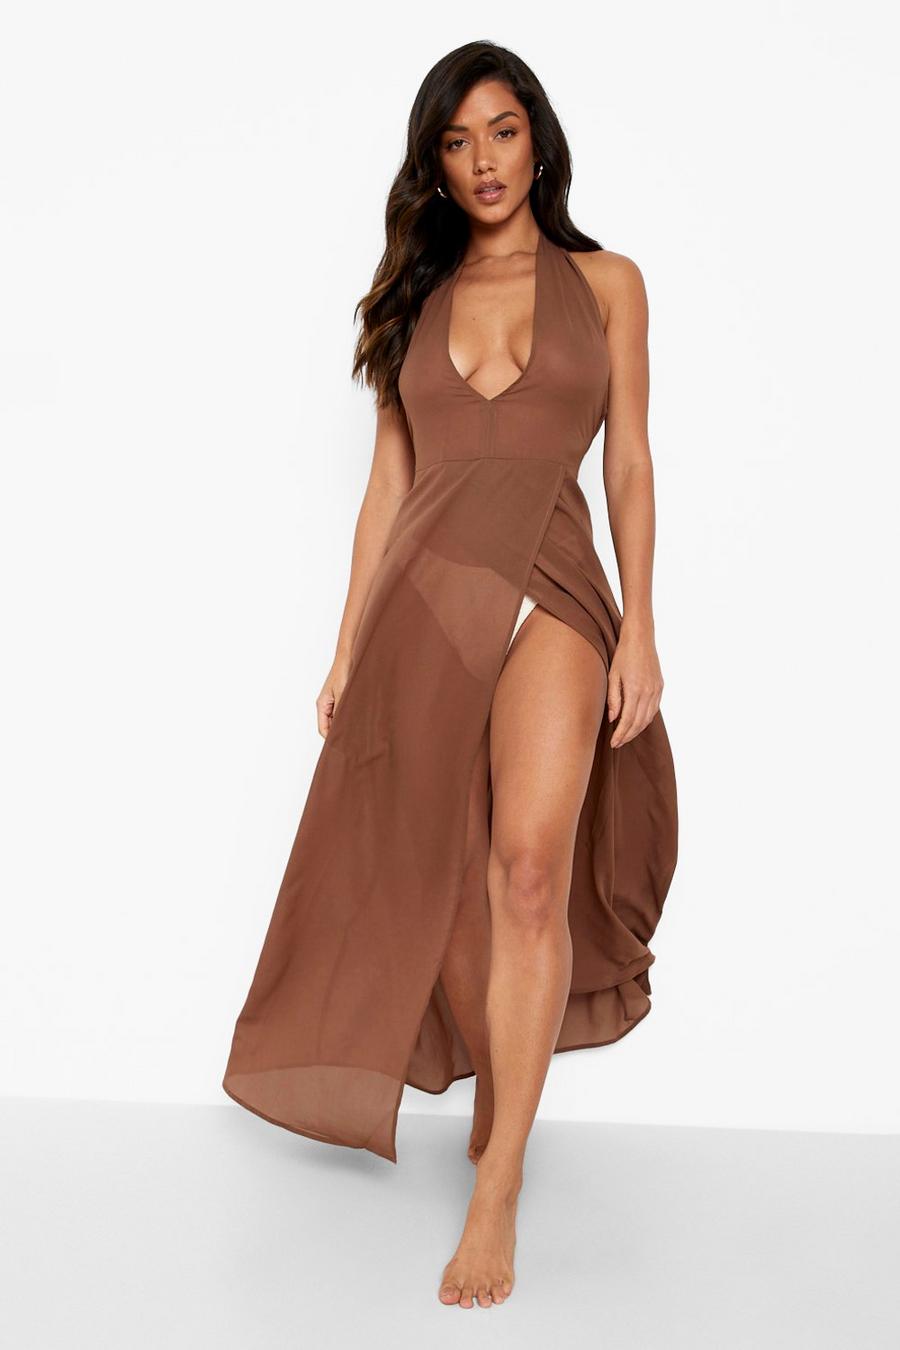 שוקולד שמלת חוף עם מחשוף עמוק מבד שיפון